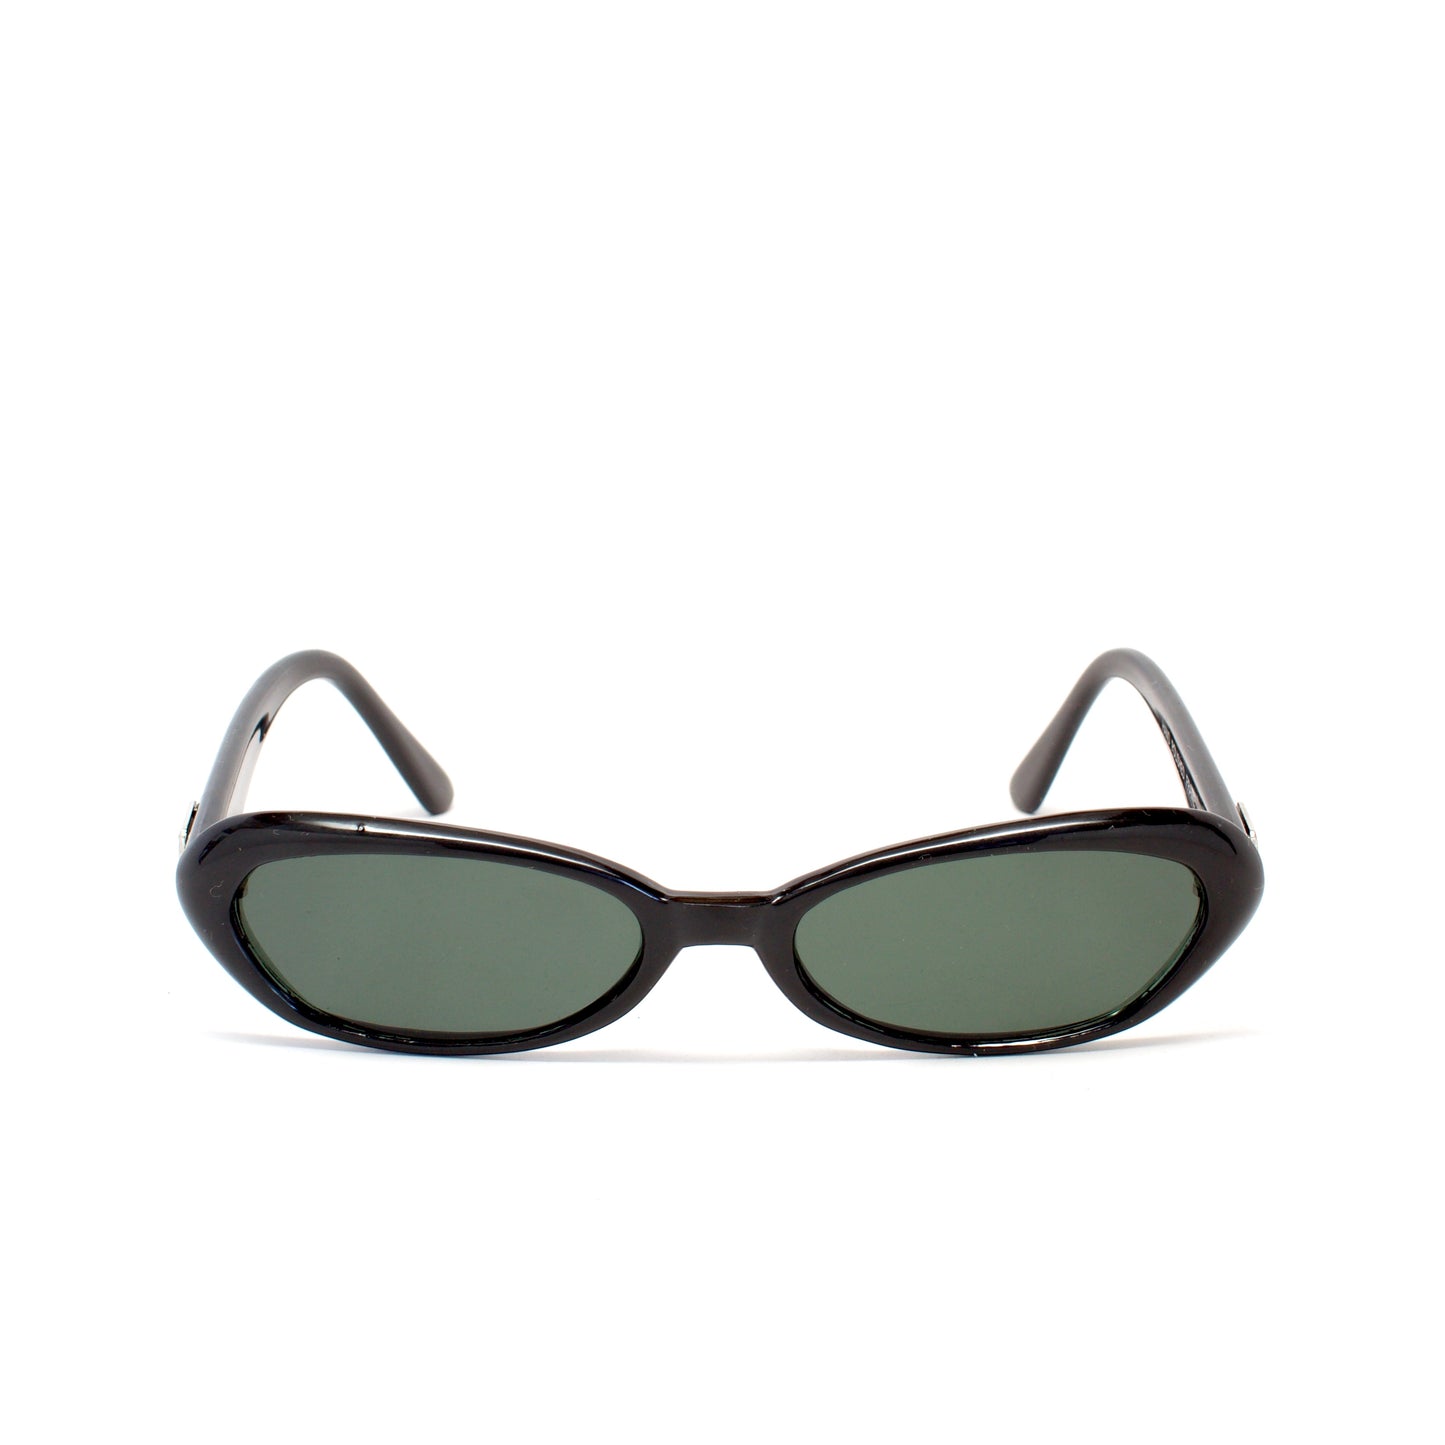 Vintage Small Sized Thin Narrow Shape Redondo Sunglasses - Black